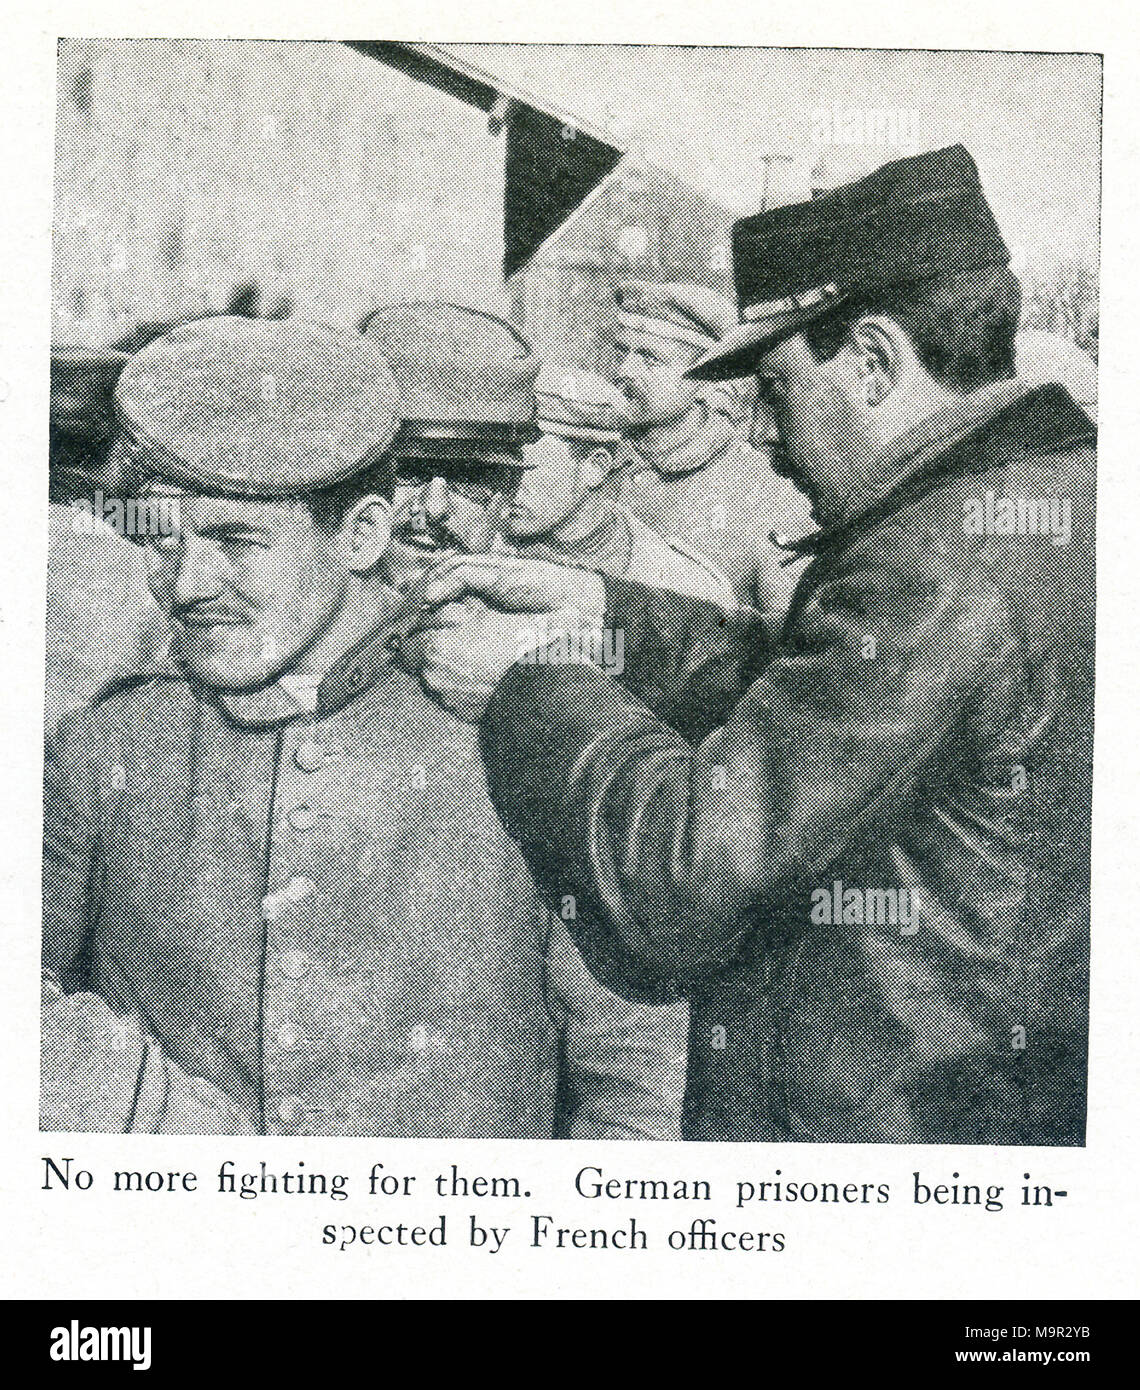 Dieses Foto stammt aus dem Ersten Weltkrieg und zeigt deutsche Kriegsgefangene. Die Überschrift sagt: Nicht mehr für sie kämpfen. Deutsche Kriegsgefangene durch französische Offiziere inspiziert. Stockfoto